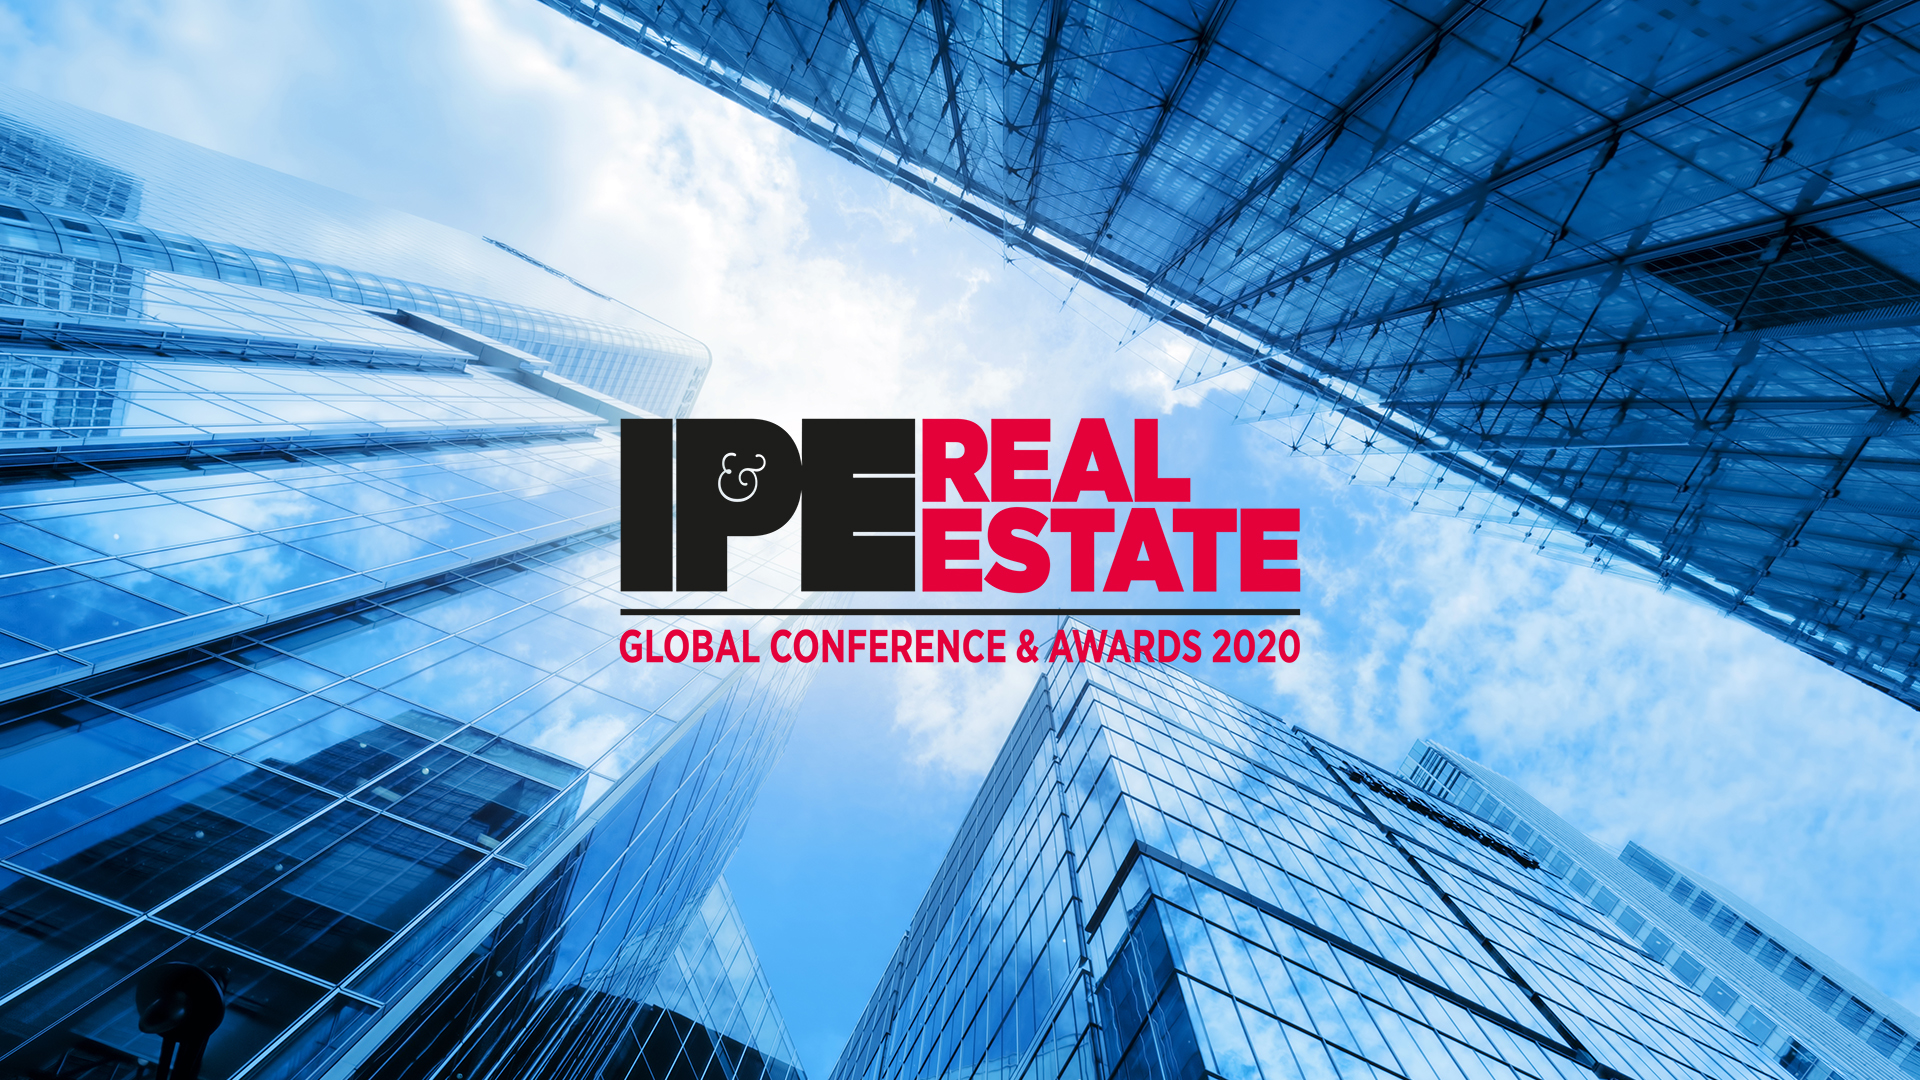 Gagnant de deux prix aux IPE Real Estate Awards 2020!